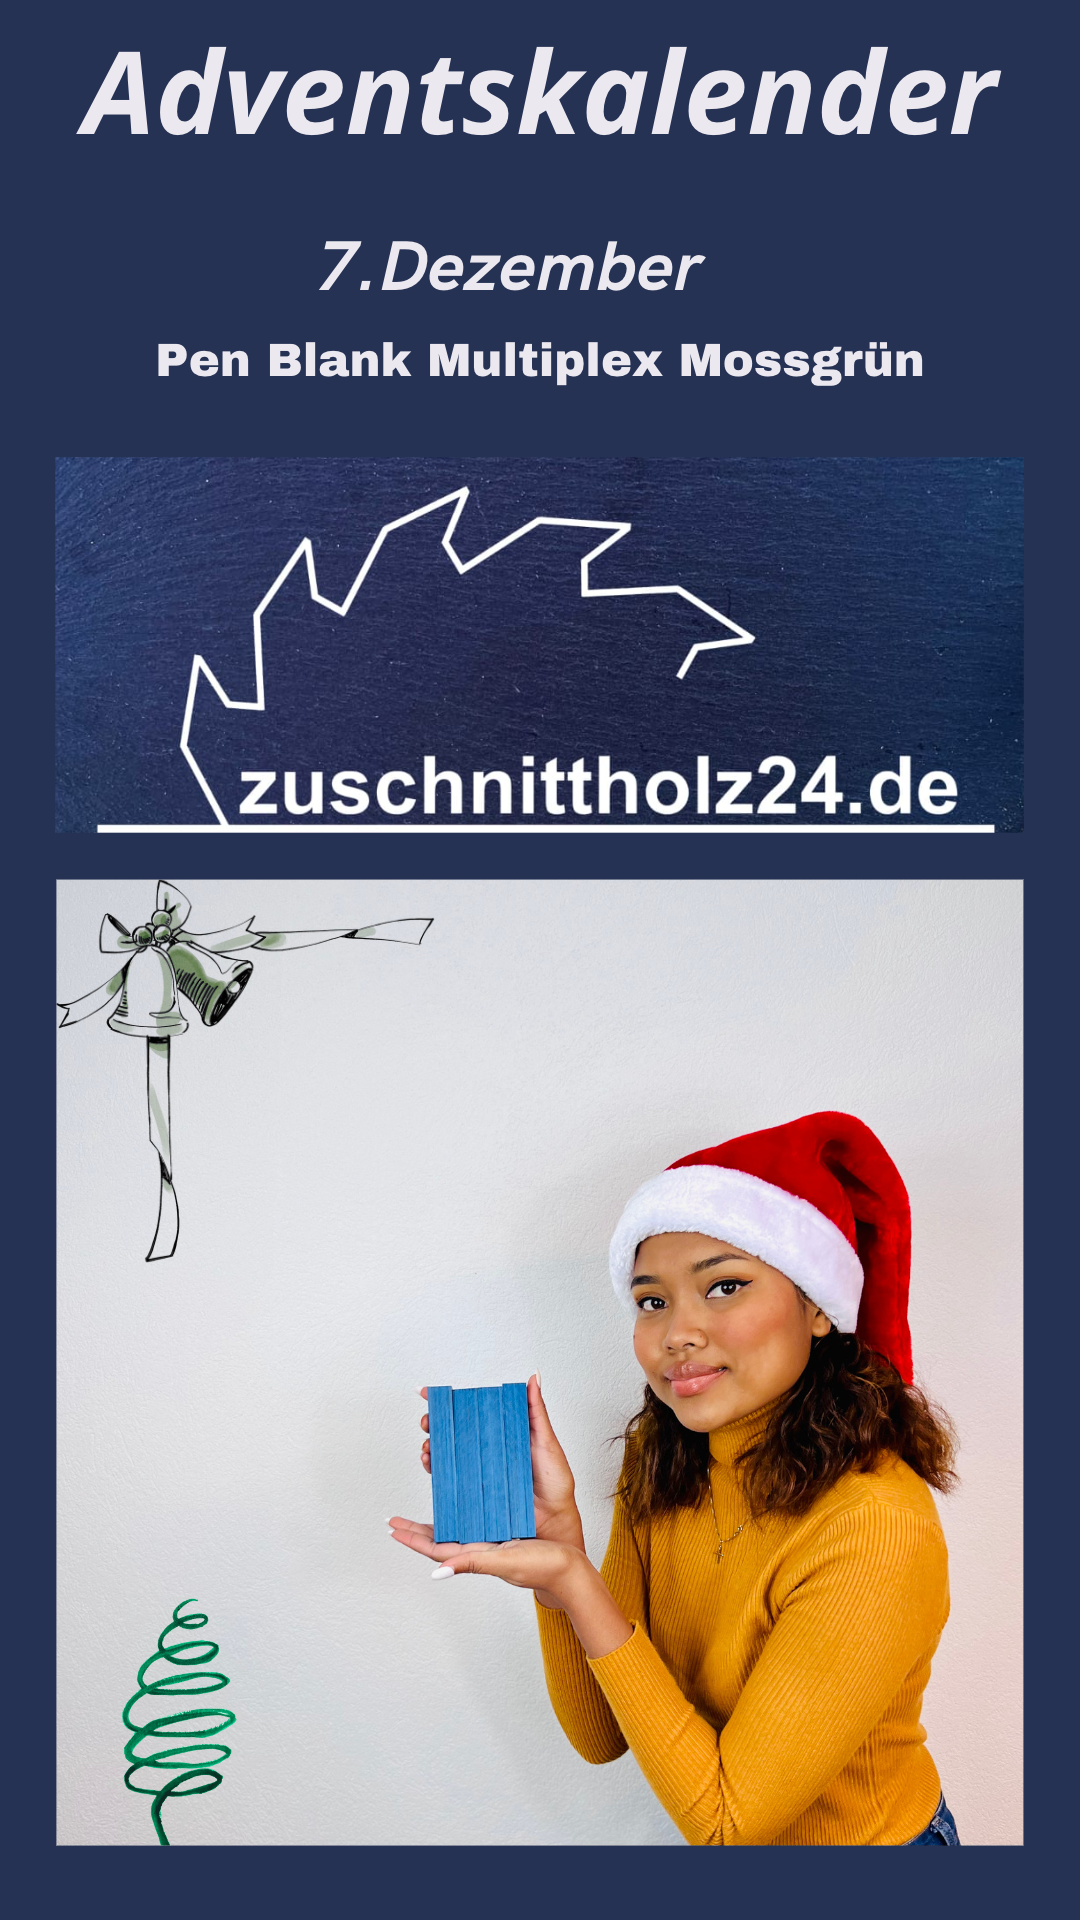 7._Adventskalender_Zuschnittholz24